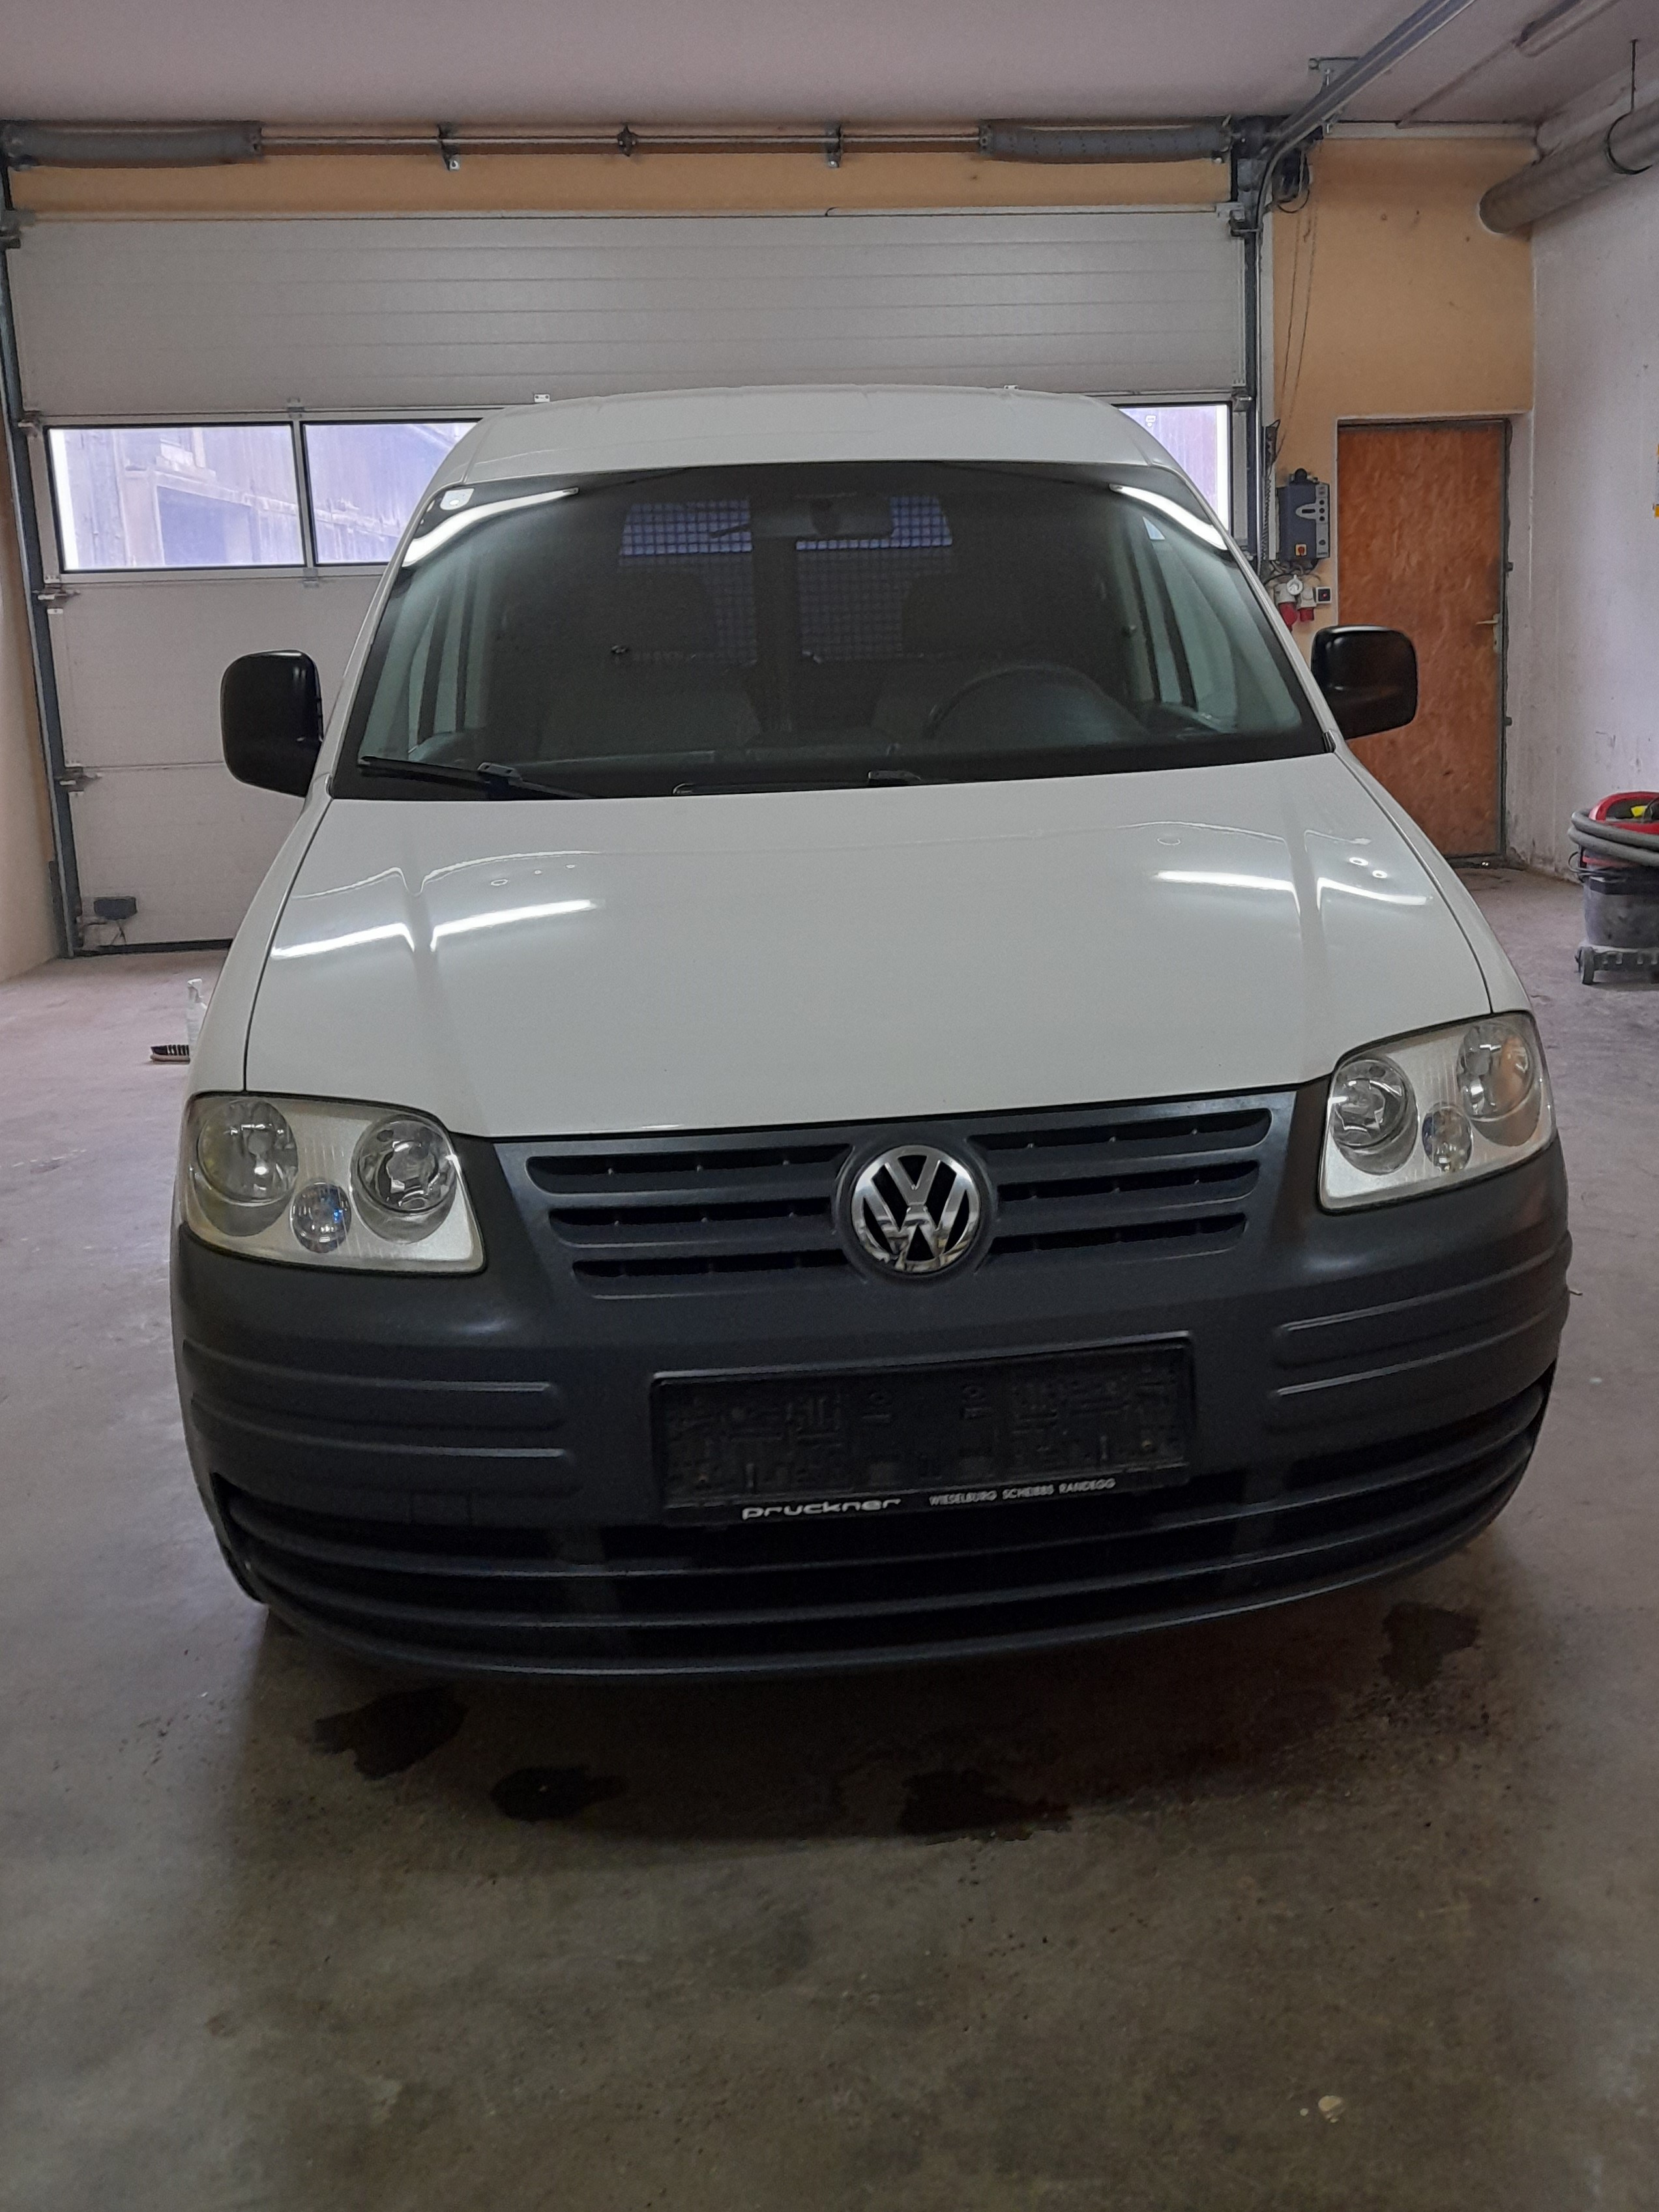 VW Caddy - € 4000